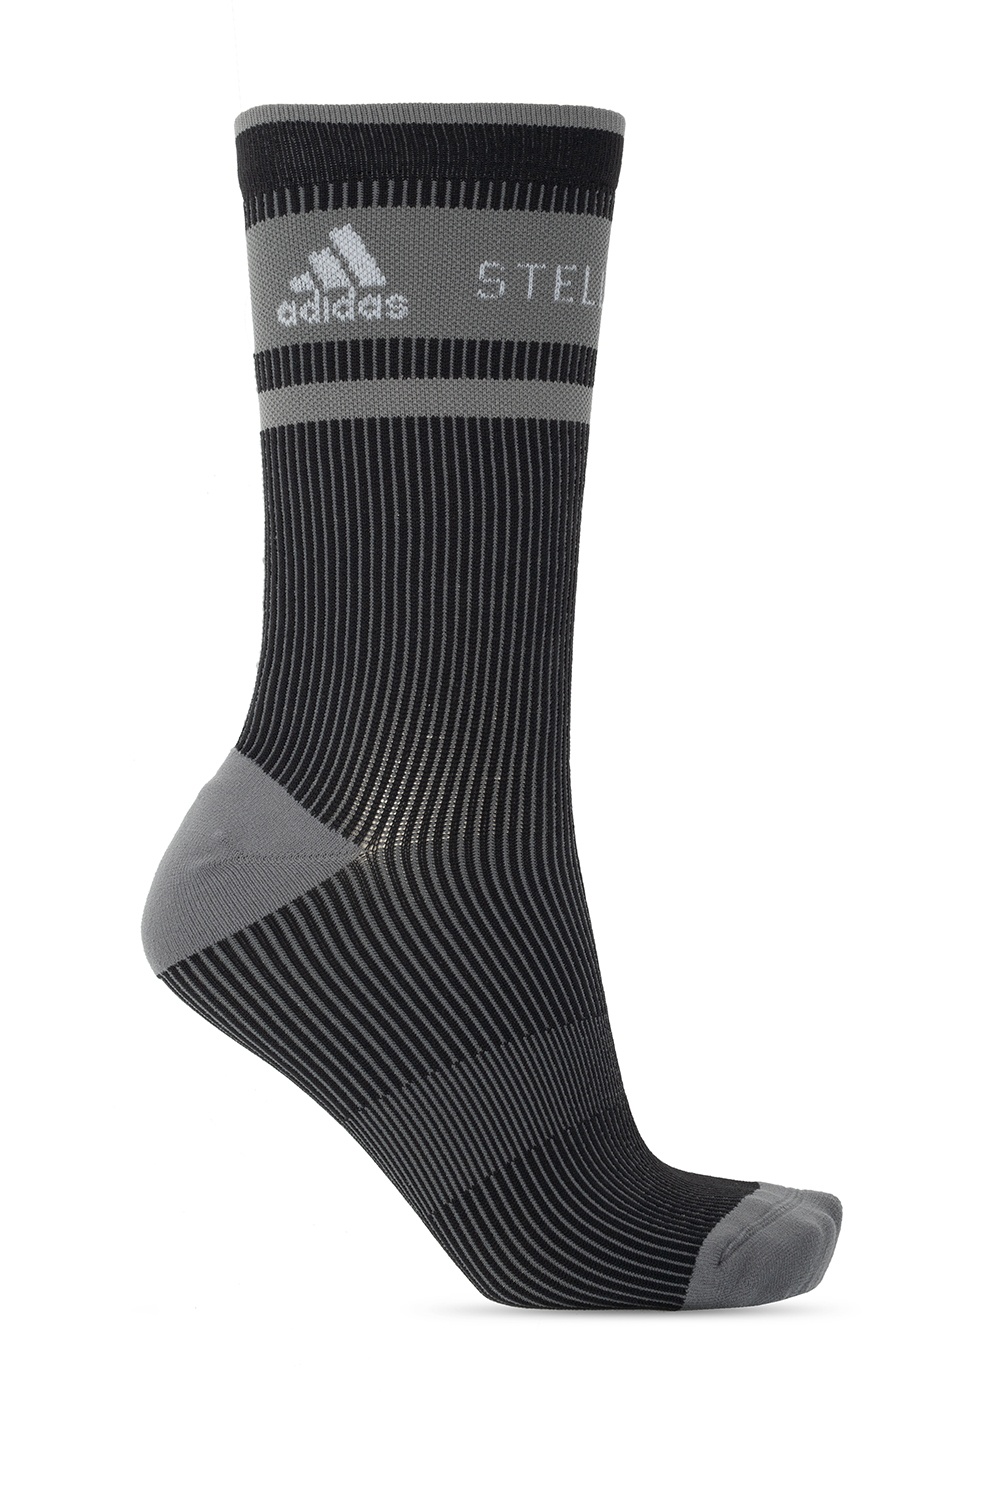 adidas by stella mccartney socks